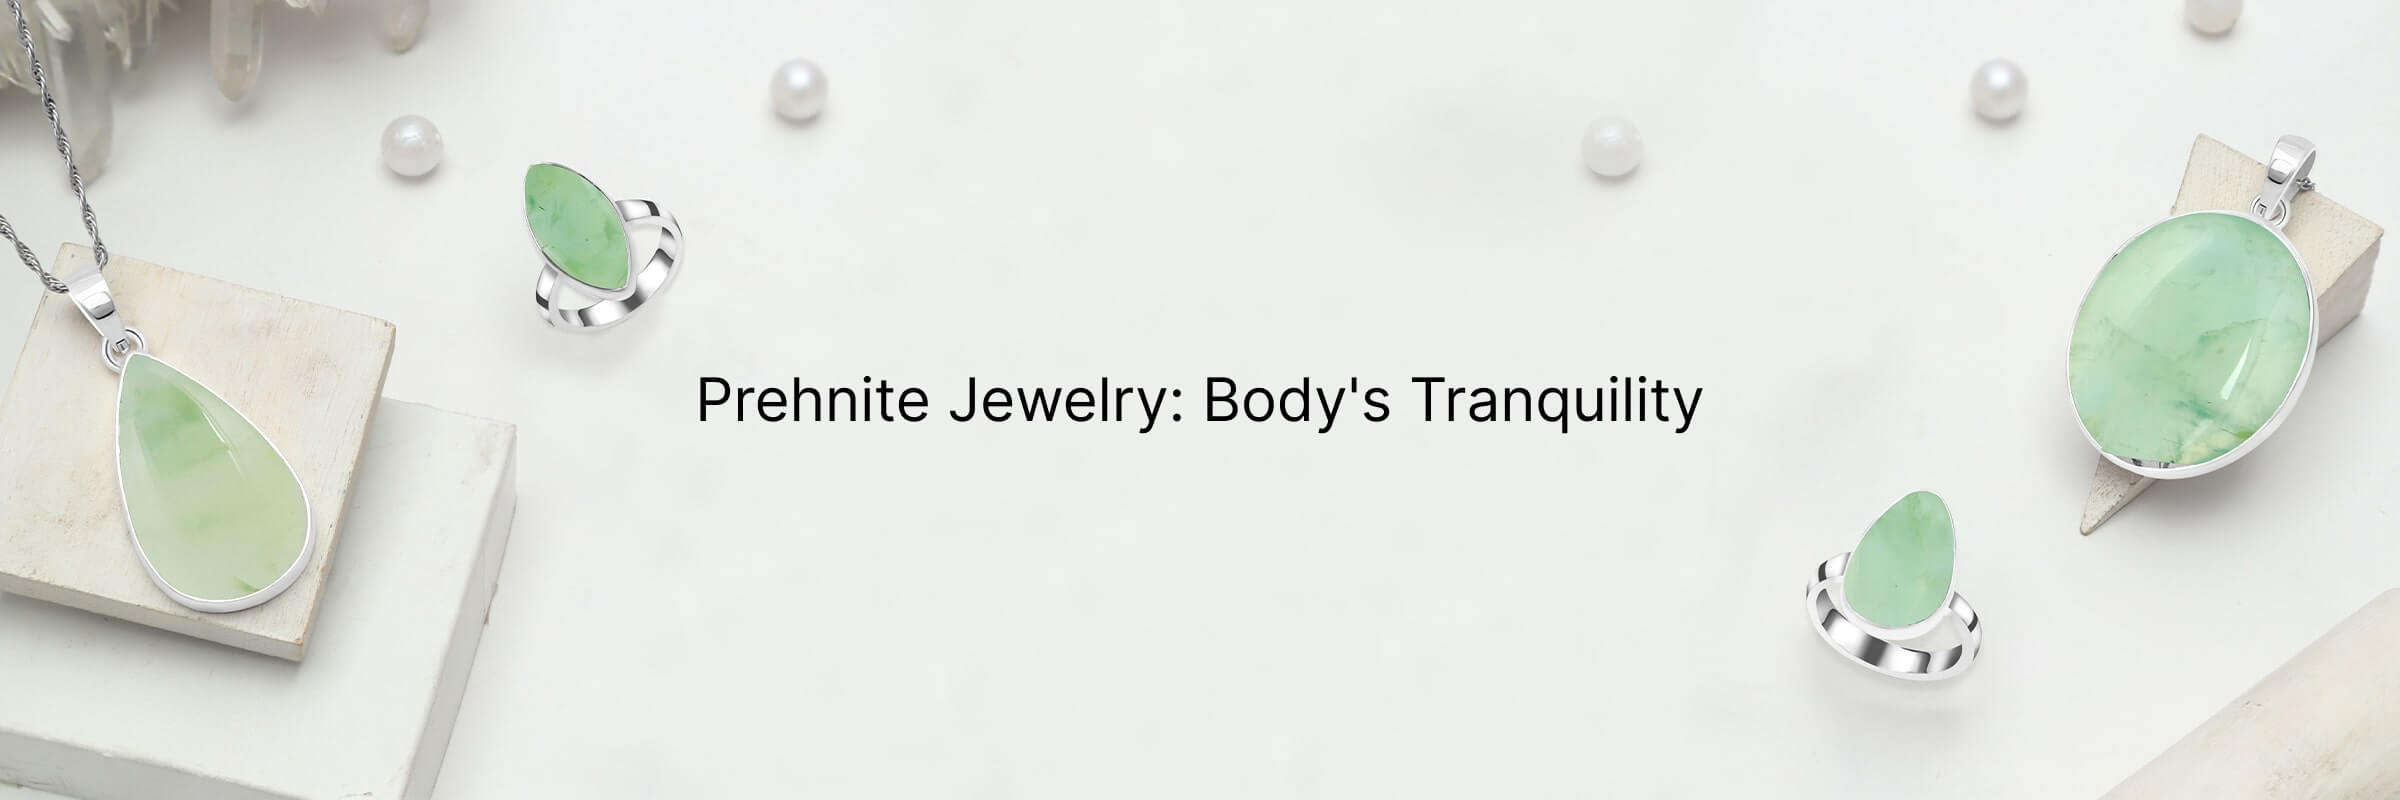 Prehnite Jewelry body